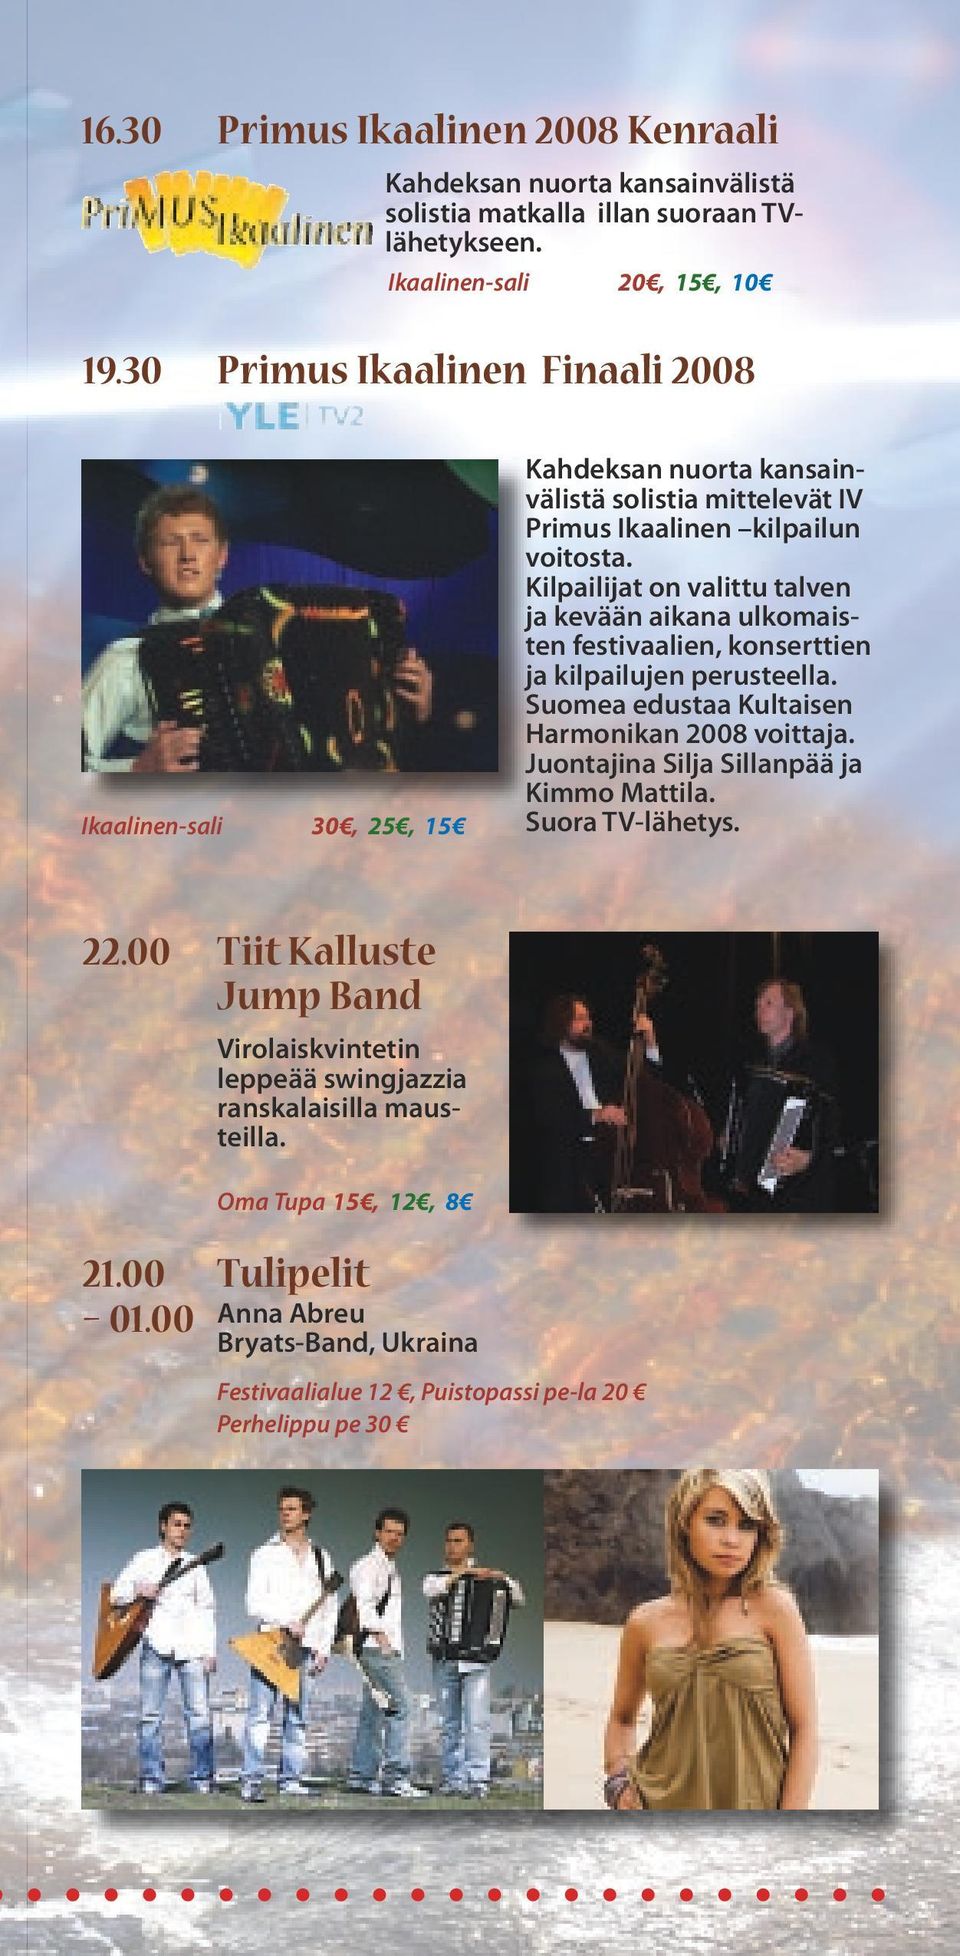 Kilpailijat on valittu talven ja kevään aikana ulkomaisten festivaalien, konserttien ja kilpailujen perusteella. Suomea edustaa Kultaisen Harmonikan 2008 voittaja.